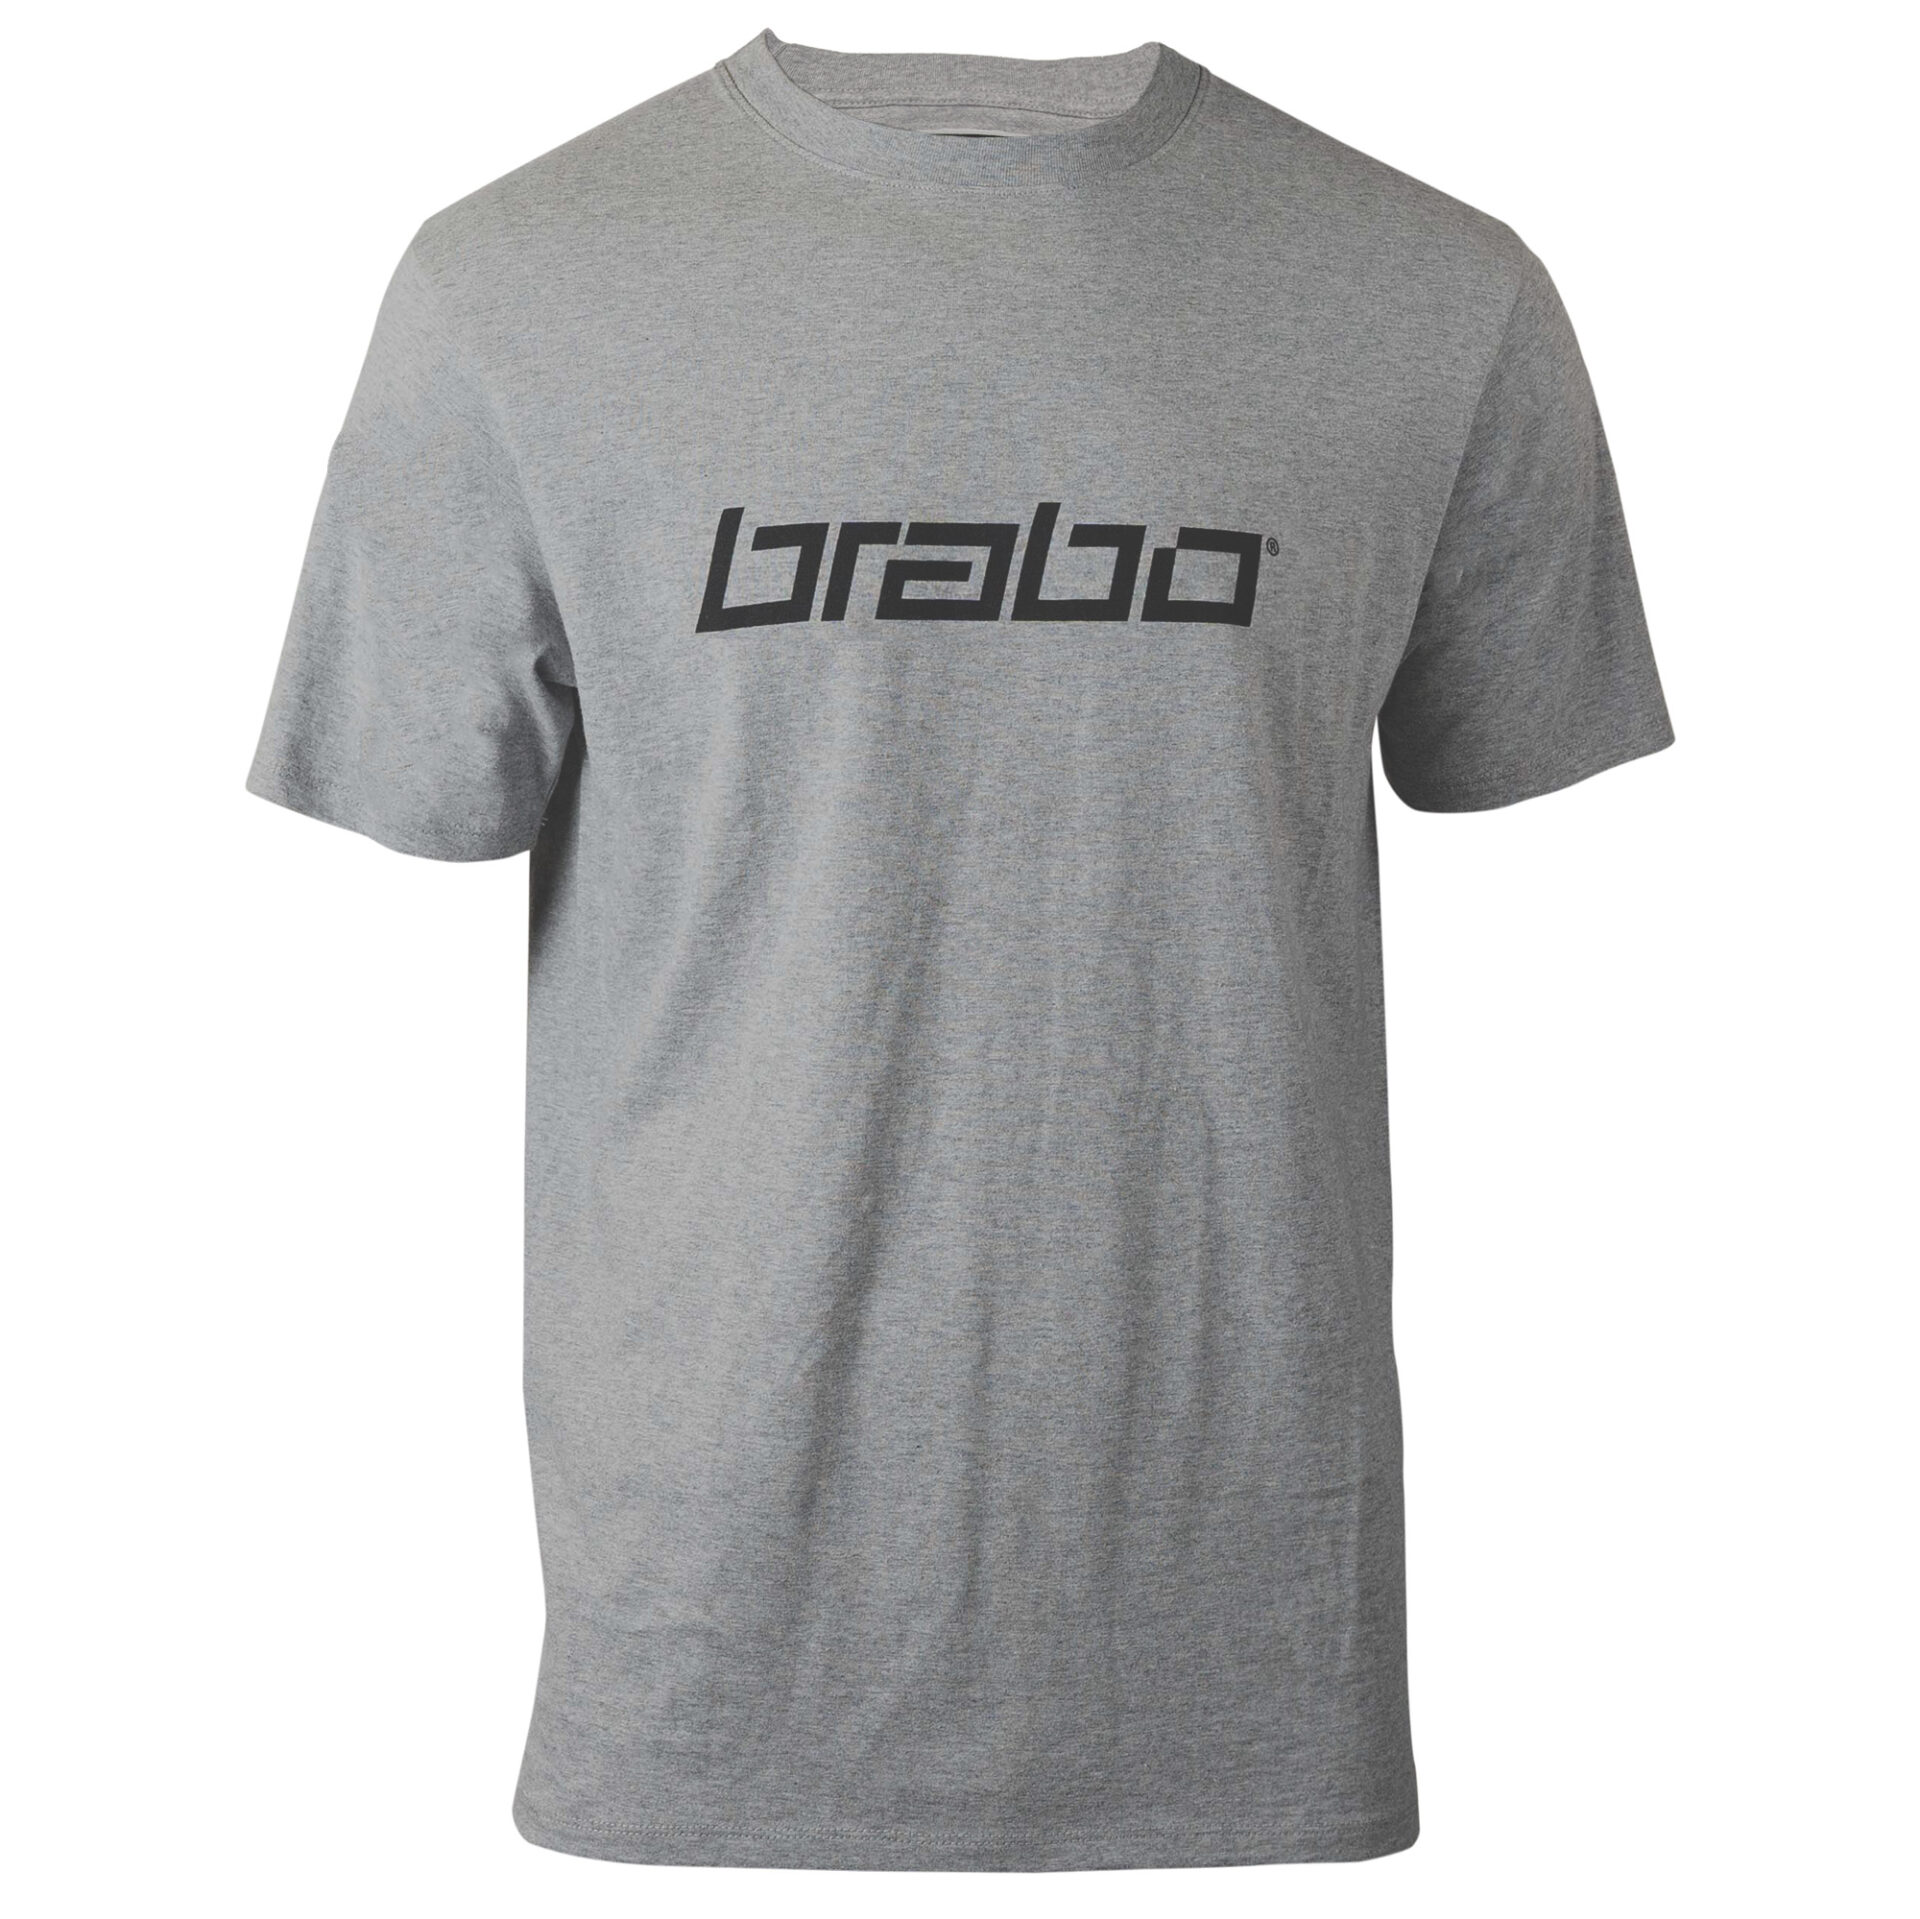 Contract Aan het leren borduurwerk T-Shirt - Brabo hockey